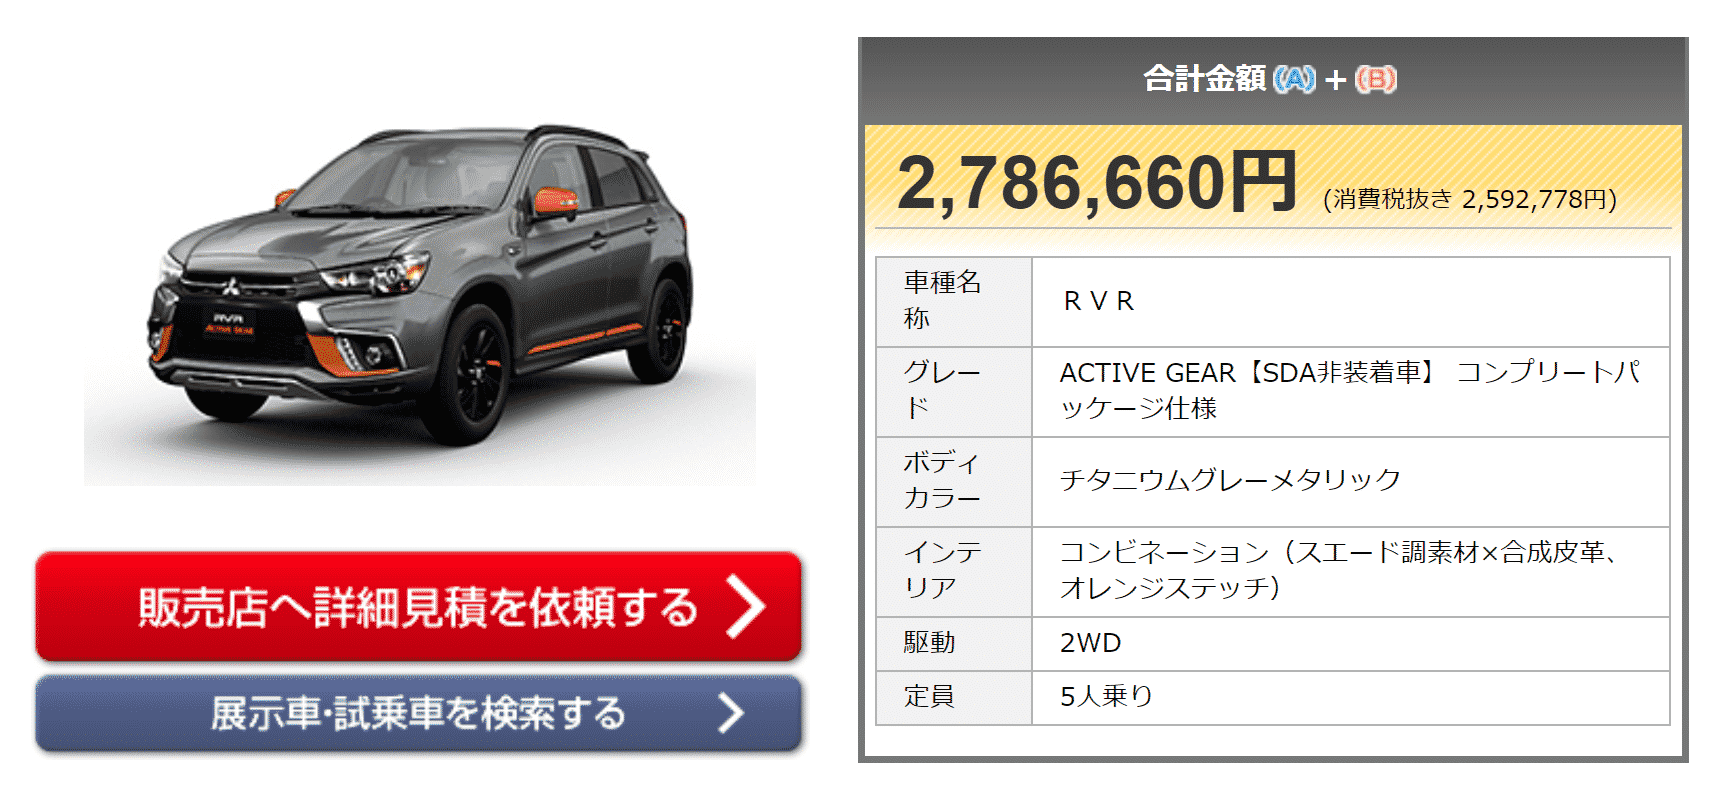 「ACTIVE GEAR【SDA非装着車】 コンプリートパッケージ仕様」の支払い総額画像